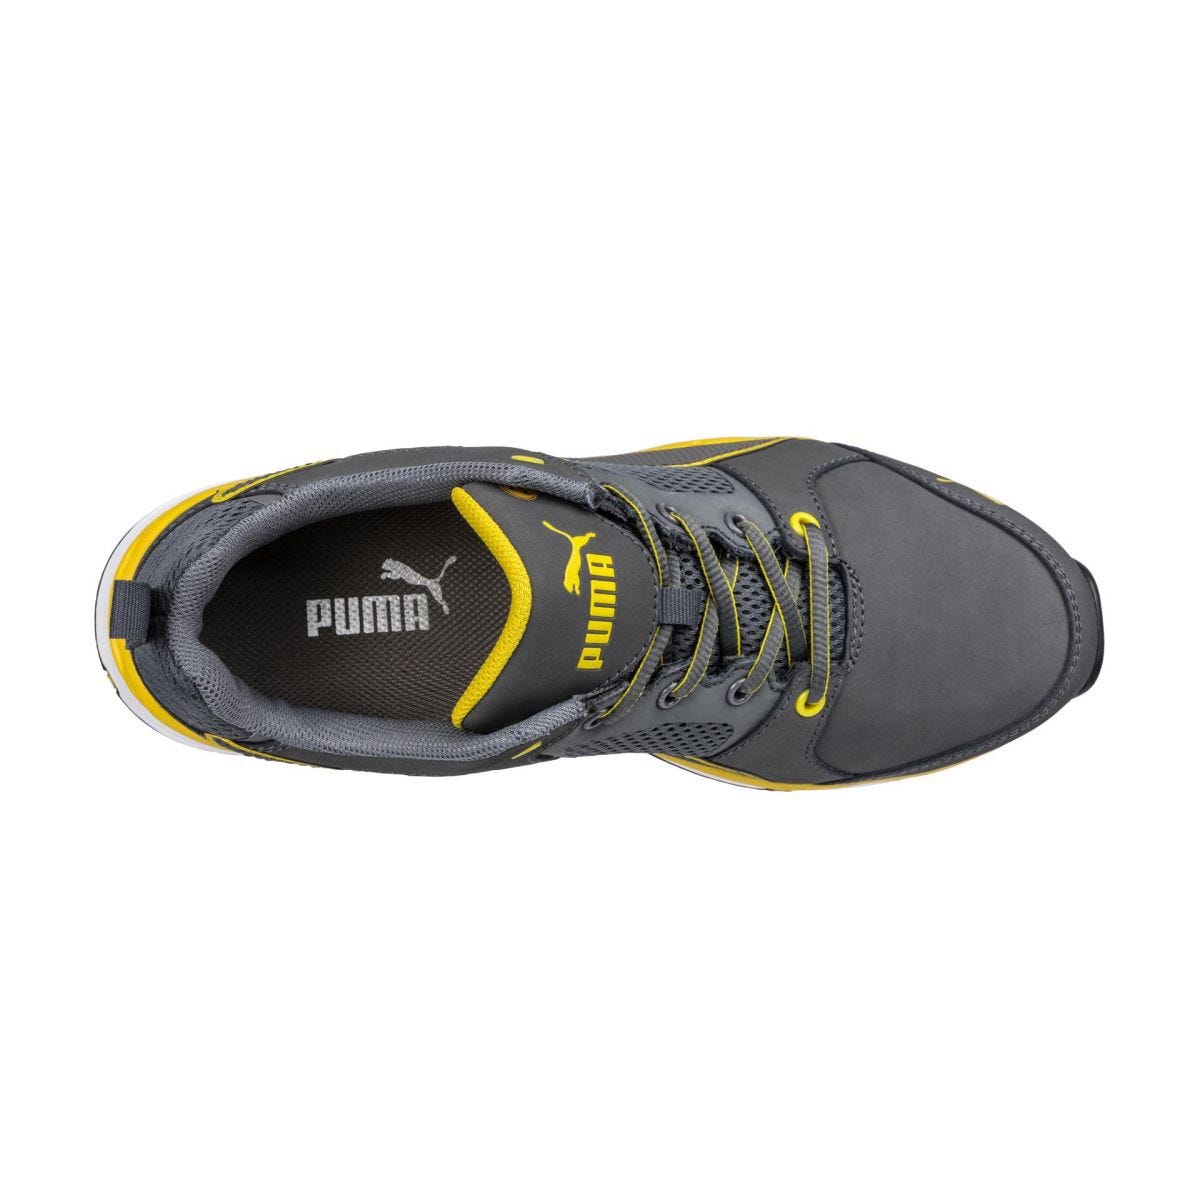 Chaussures de sécurité Pace 2.0 low S1P ESD HRO SRC jaune - Puma - Taille 42 2